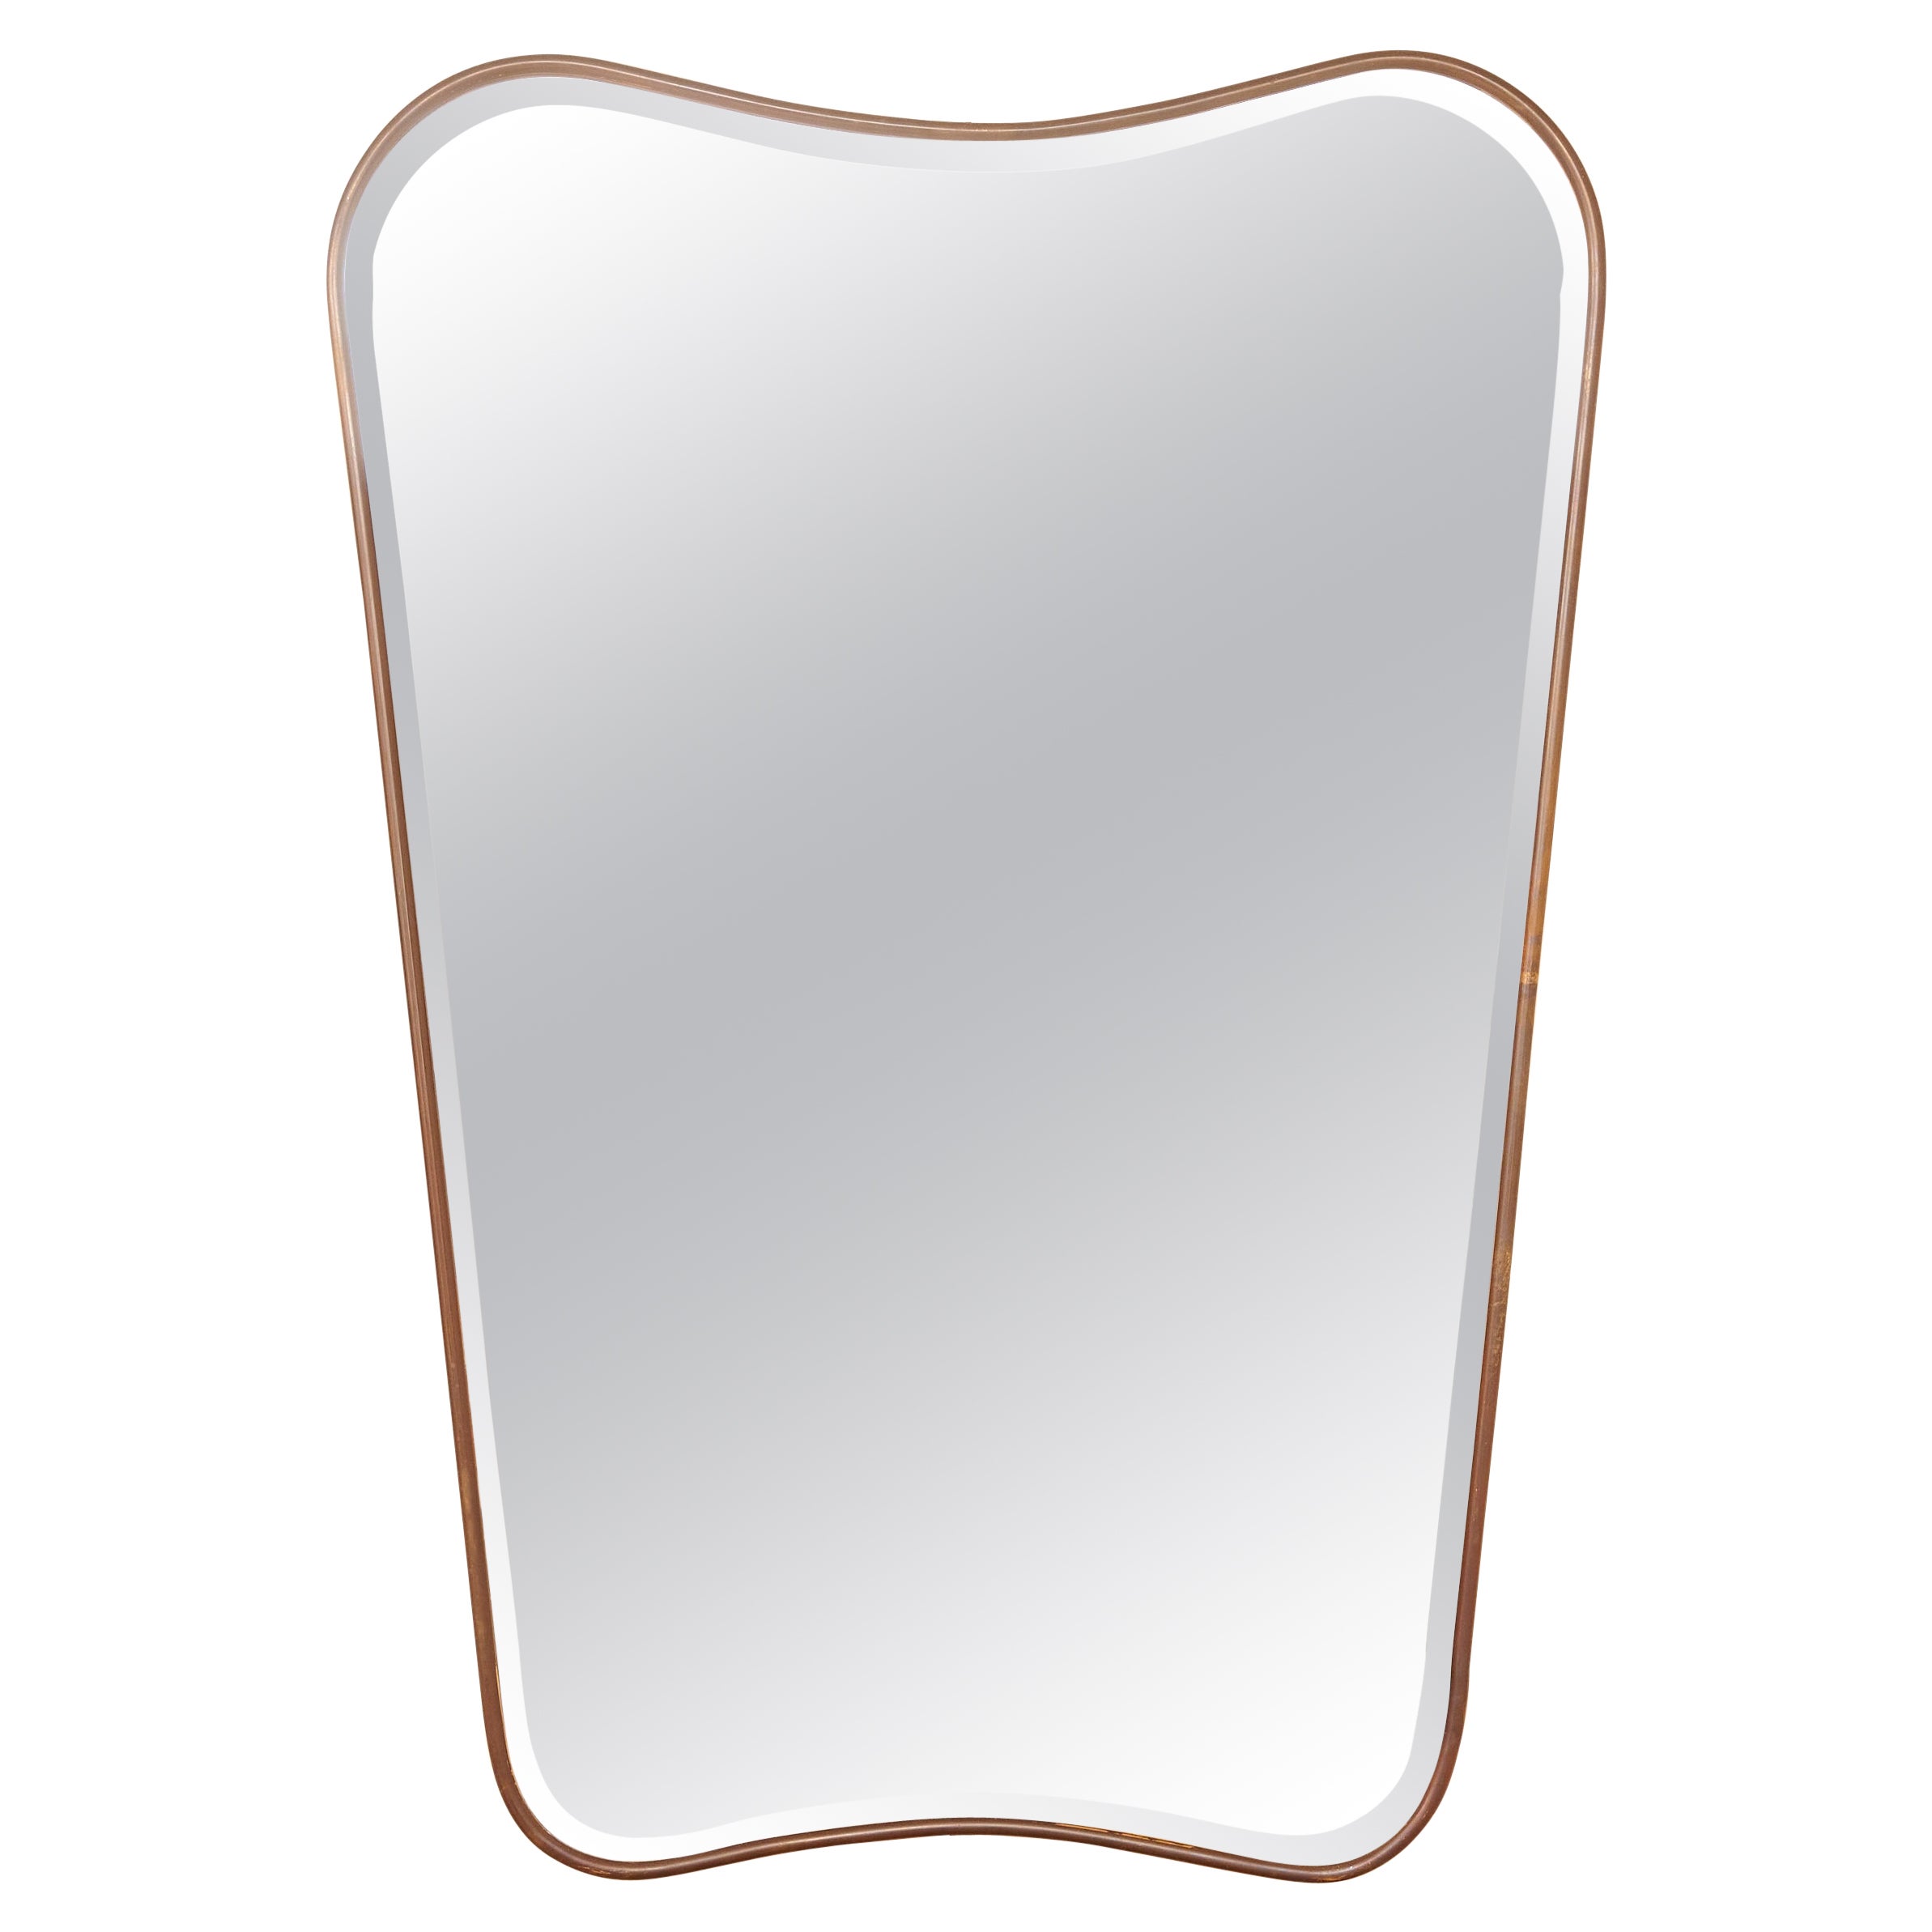 Gio Ponti Style Brass Frame Mirror